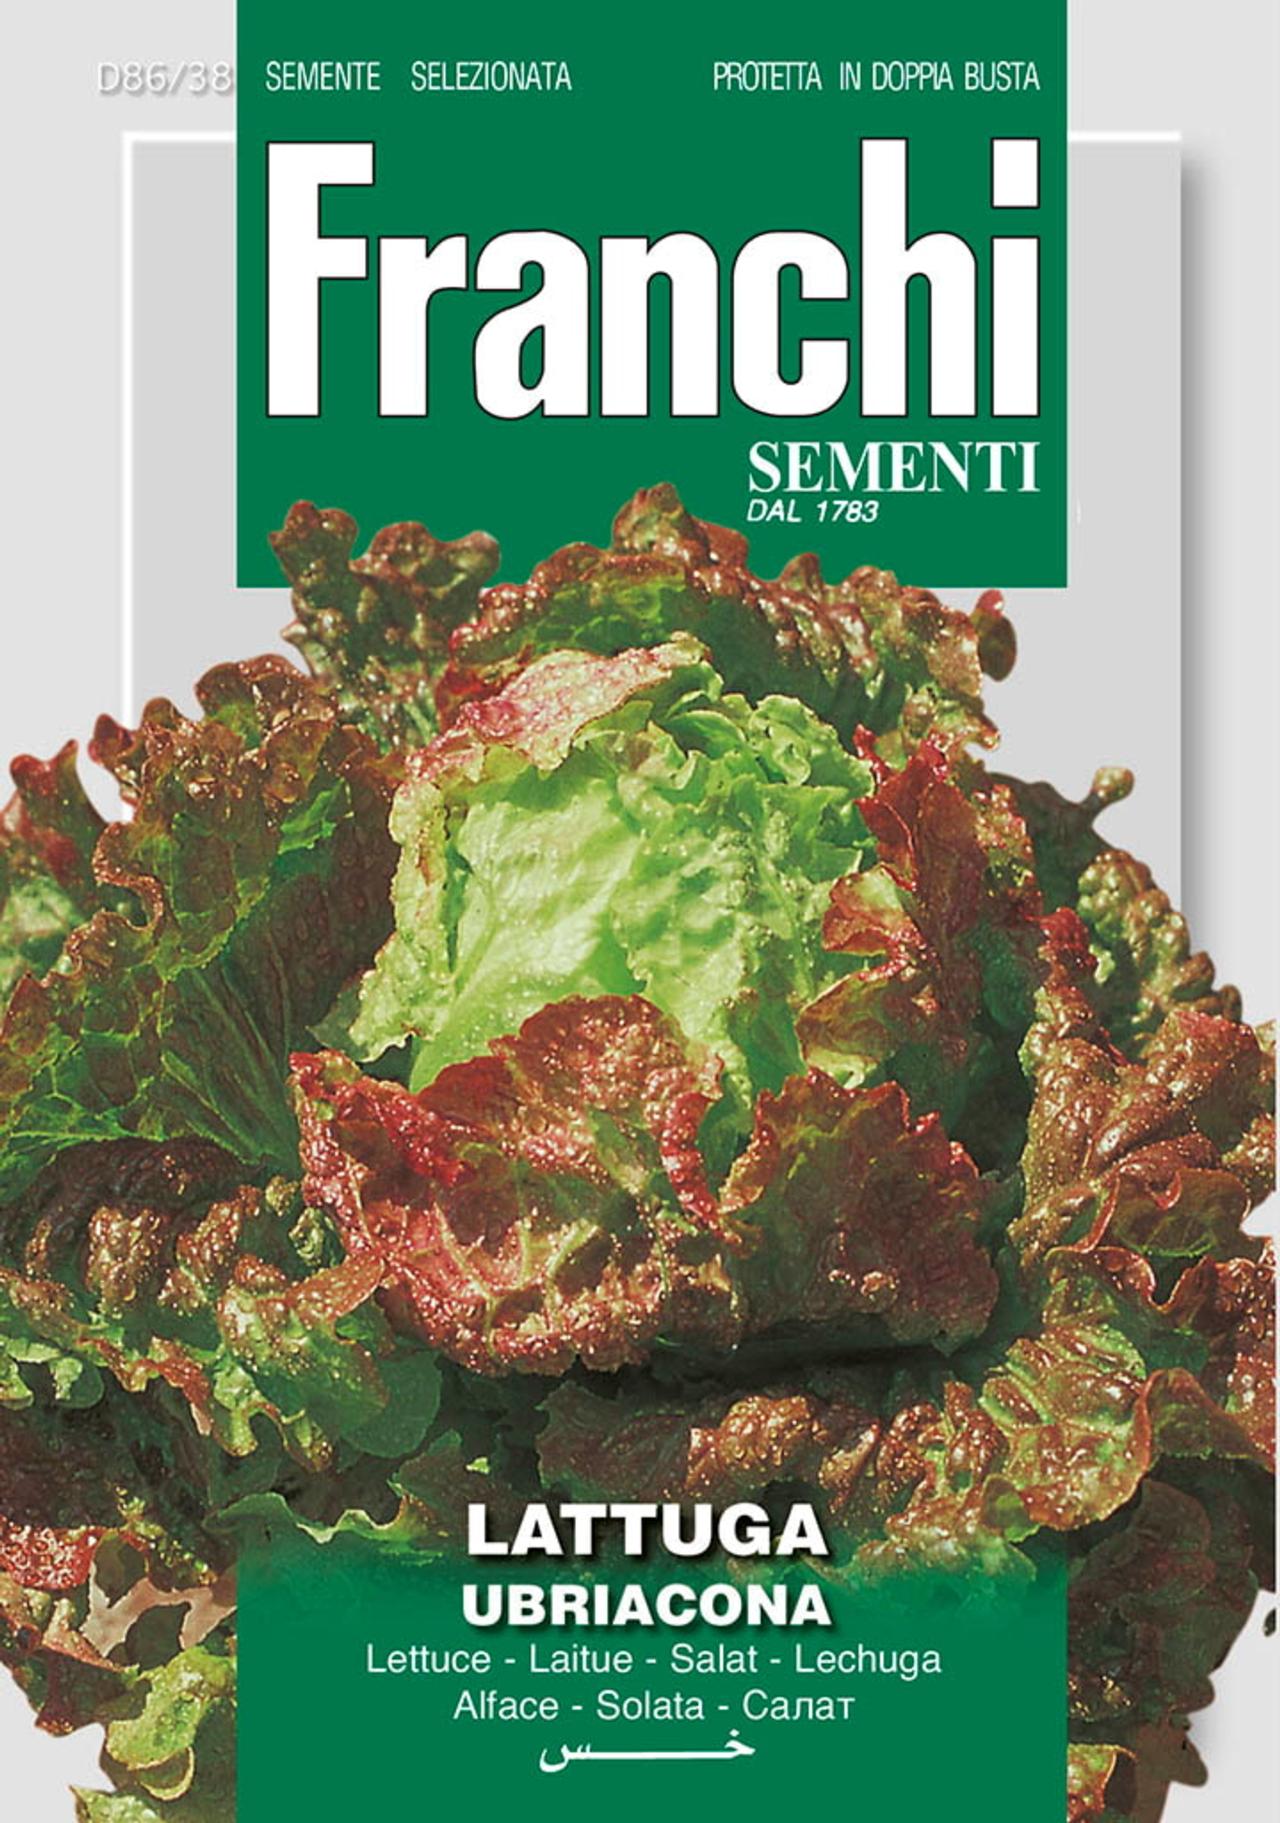 Lactuca sativa 'Ubriacona' plant